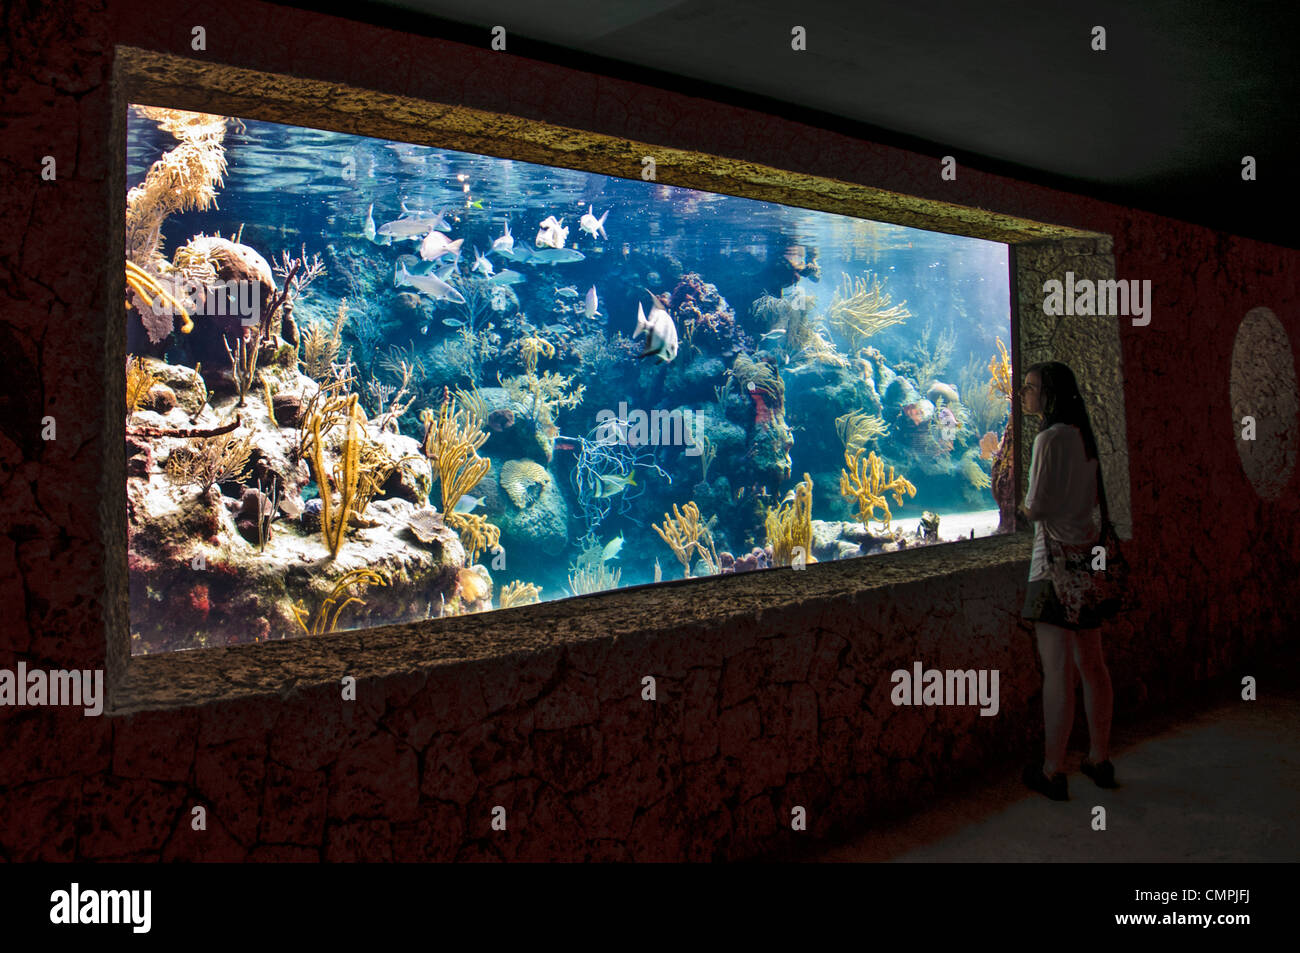 Eine Person auf der rechten Seite des Rahmens sieht durch eine Unterwasser-Aquarium Xcarat Maya Freizeitpark südlich von Cancun und Playa del Carmen auf der mexikanischen Halbinsel Yucatana. Stockfoto